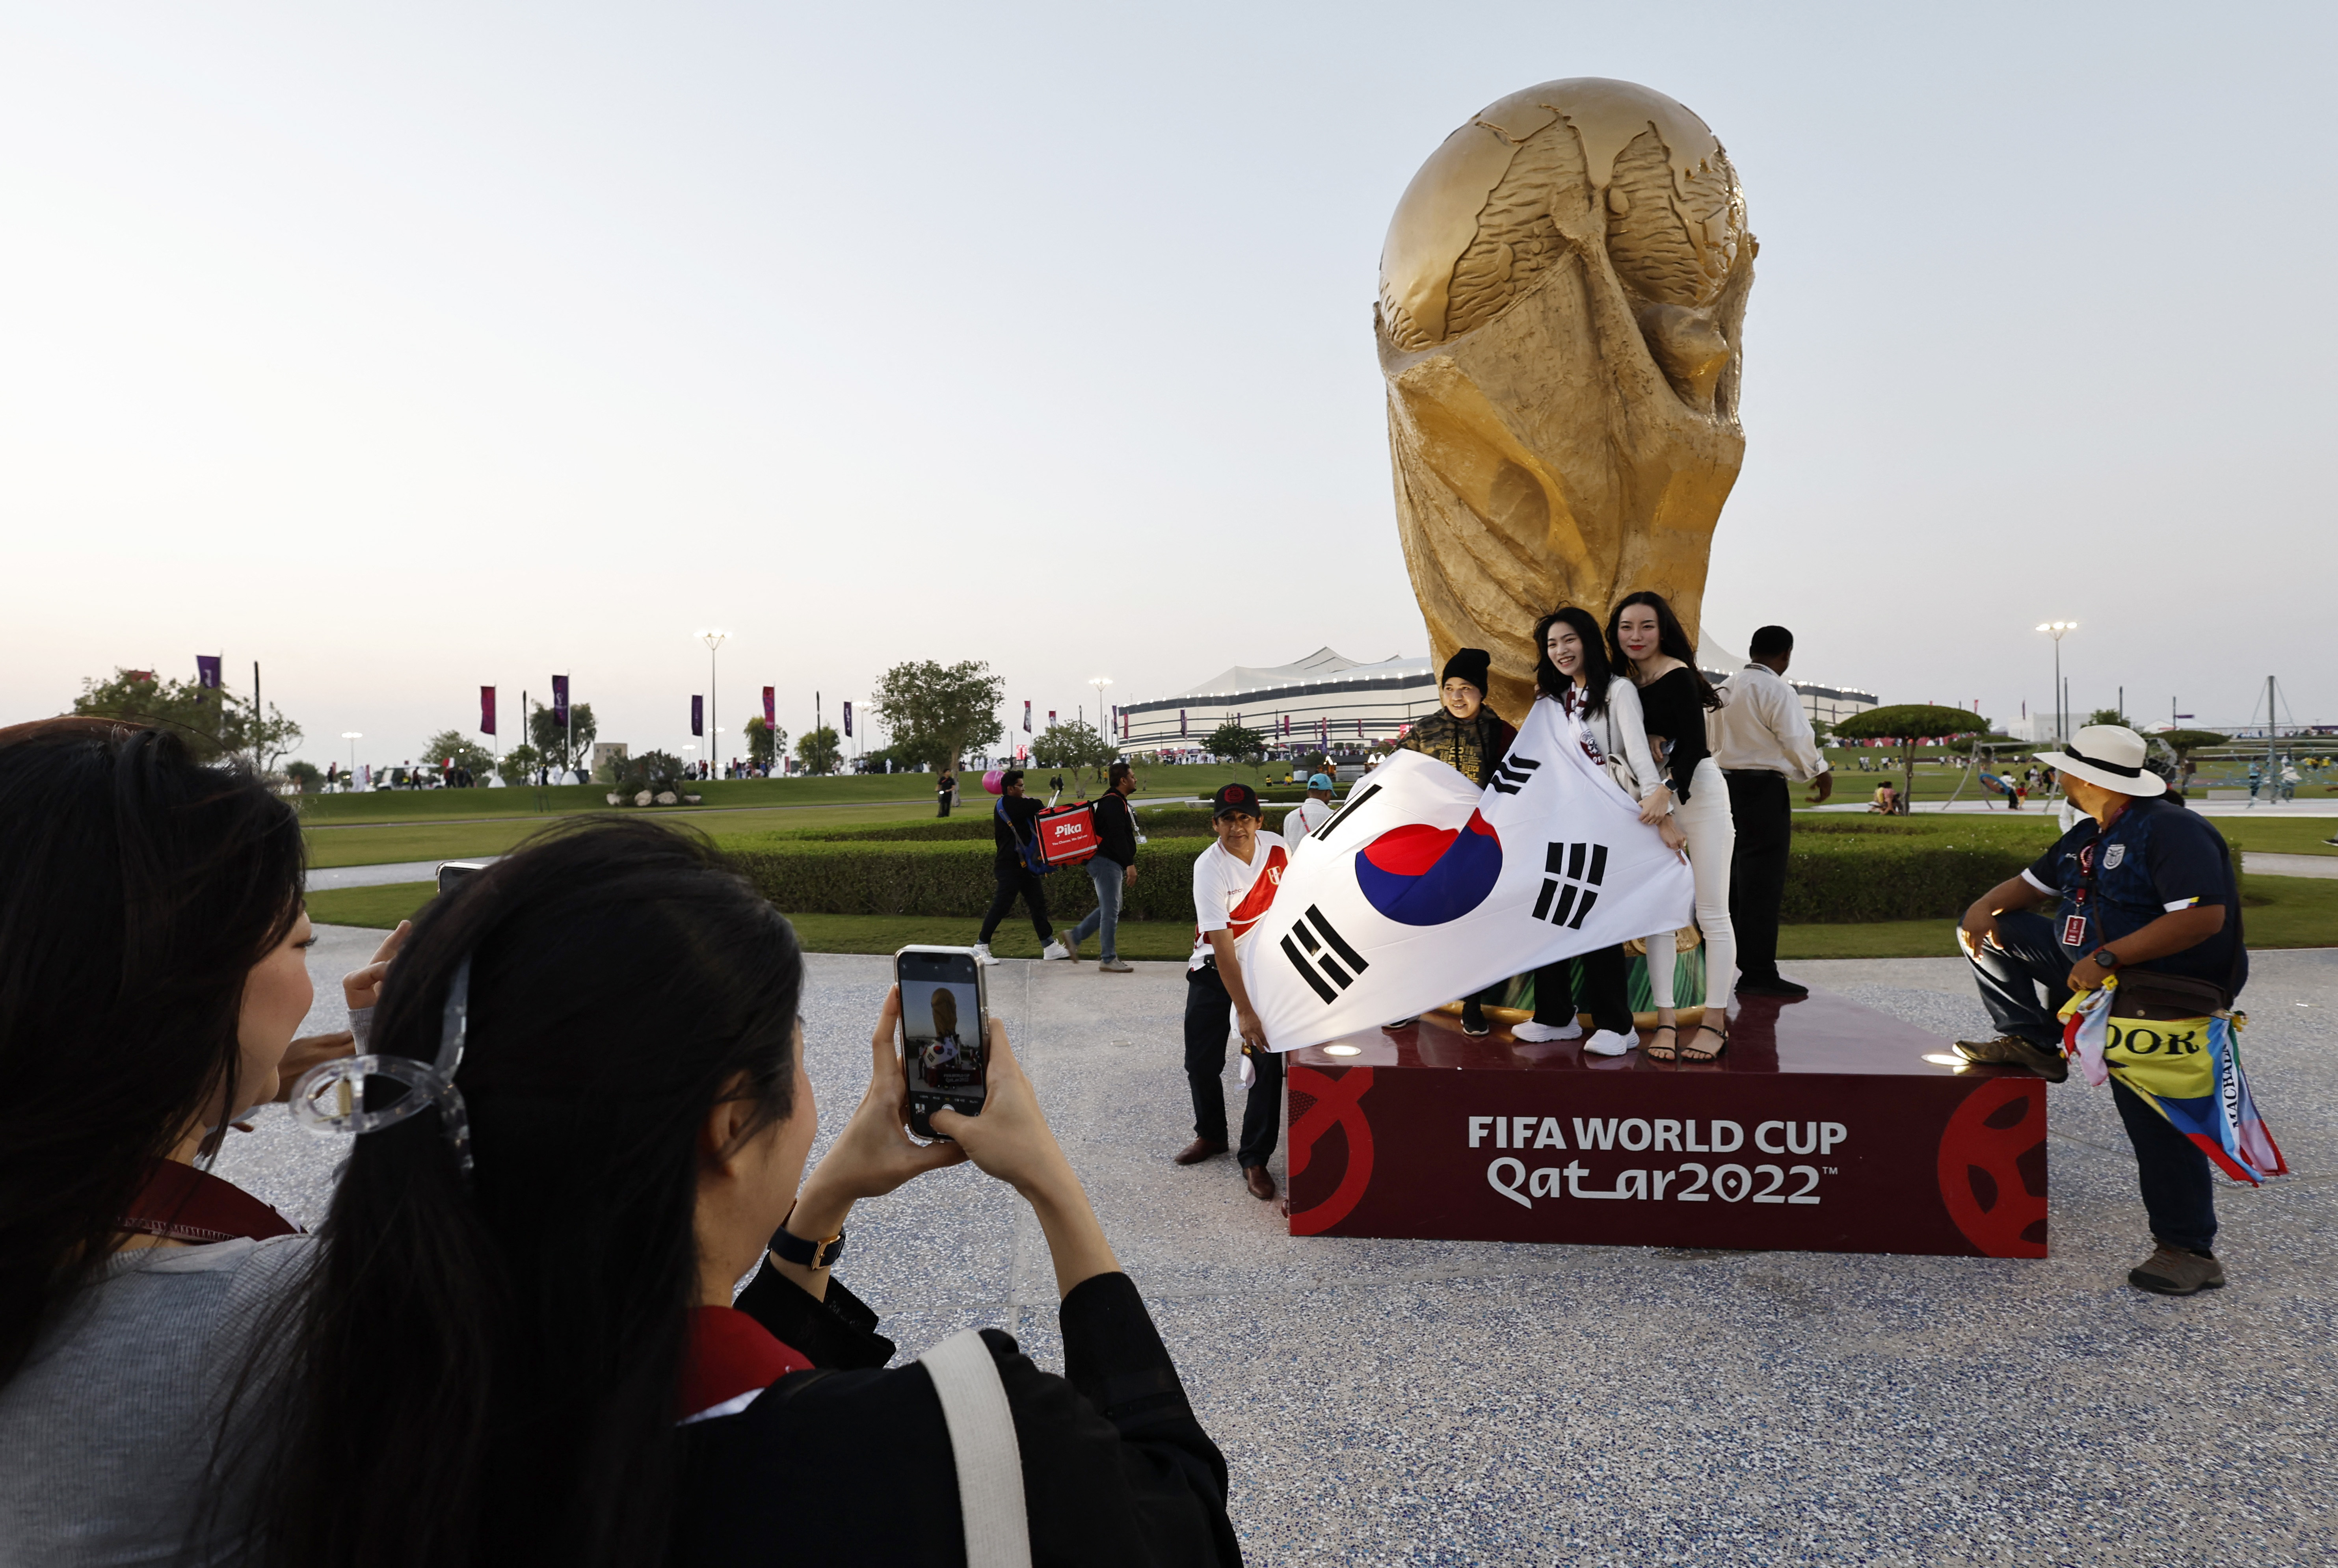 Fanáticos con la bandera de Corea del Sur posan para una foto frente a una réplica de la Copa del Mundo fuera del estadio antes del partido. También hay un ecuatoriano y un peruano (REUTERS/Hamad I Mohammed)